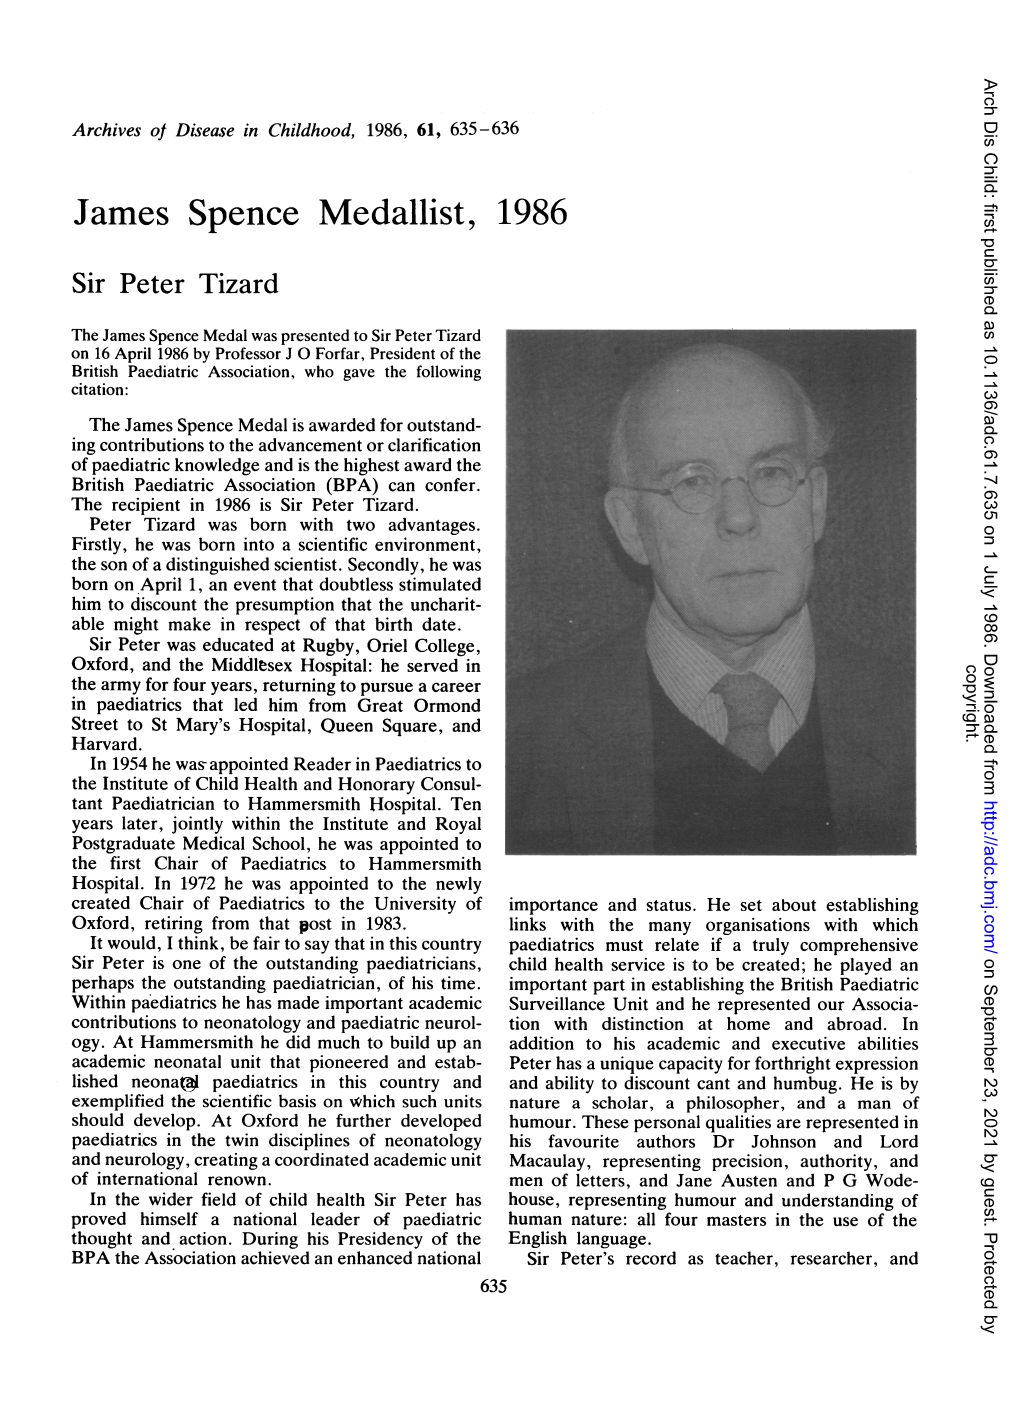 James Spence Medallist, 1986 Sir Peter Tizard